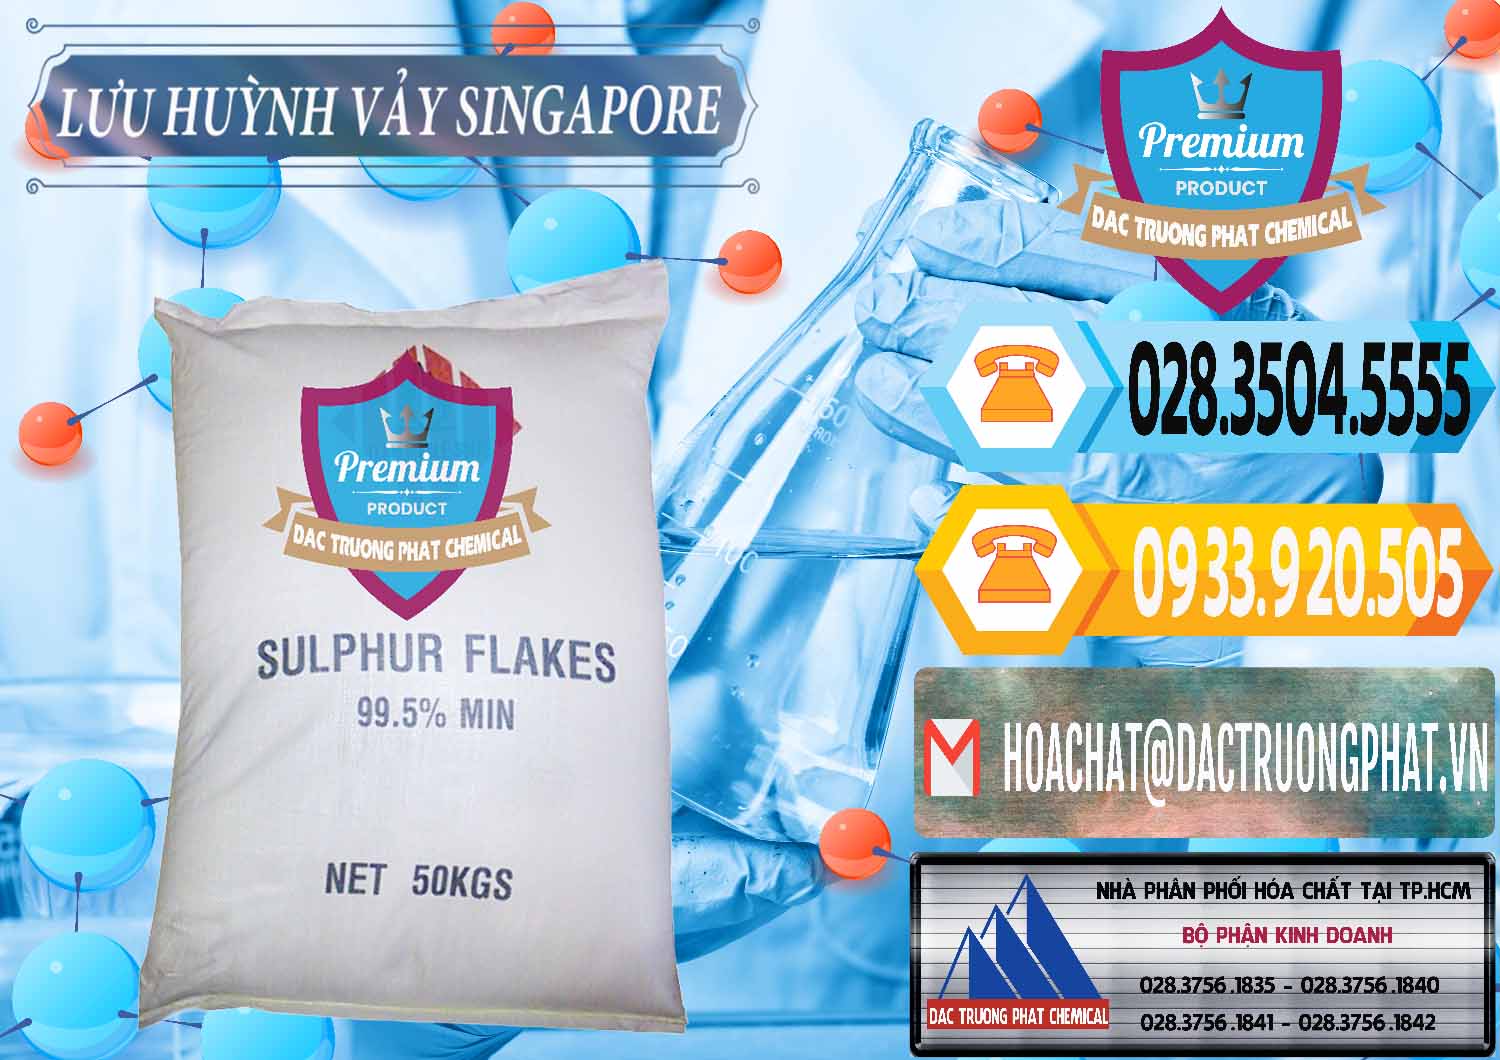 Bán & cung cấp Lưu huỳnh Vảy - Sulfur Flakes Singapore - 0346 - Chuyên phân phối và cung cấp hóa chất tại TP.HCM - hoachattayrua.net